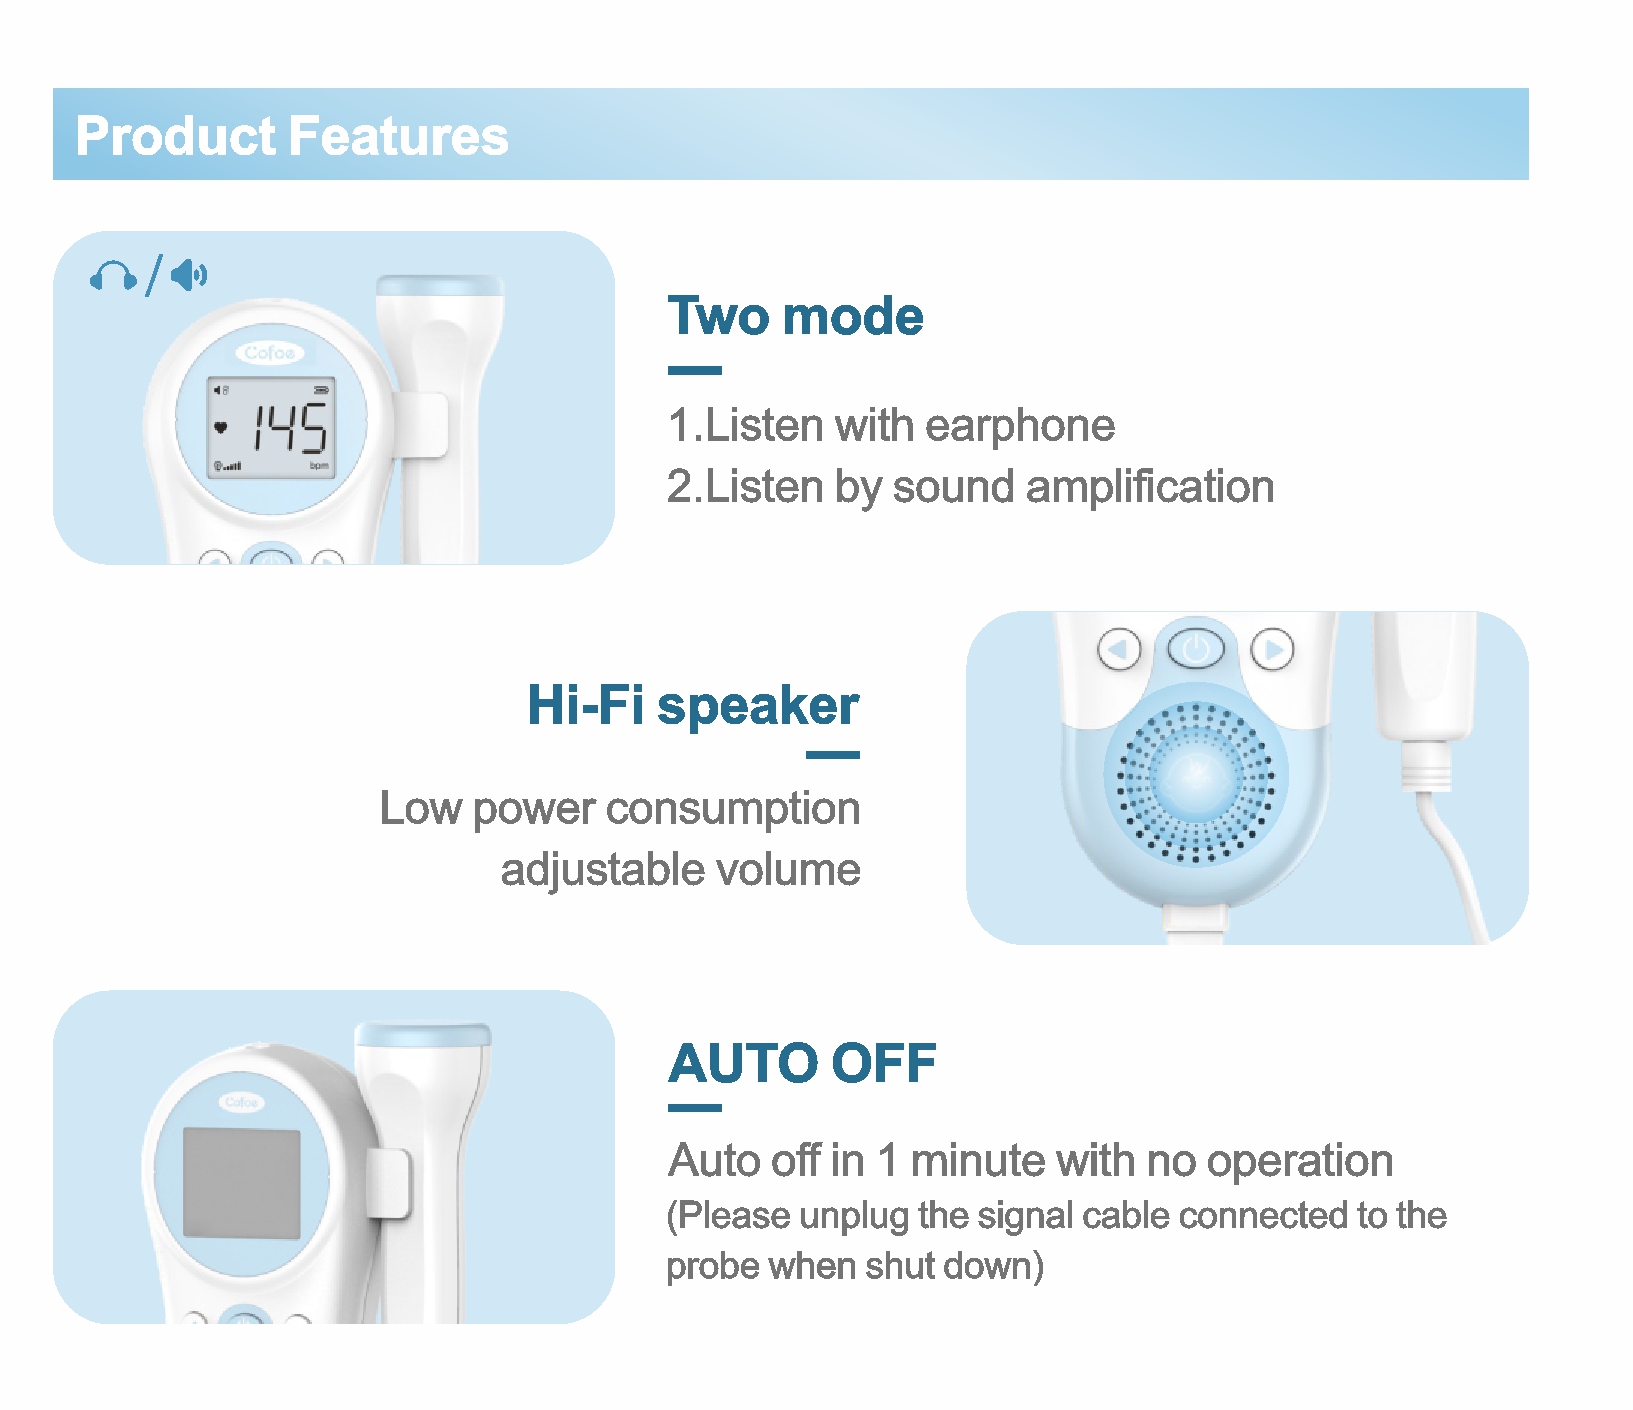 HB-1003s Doppler Baby Heart Monitor for Pregnancy Fetal Heart Rate Monitor Fetal Monitor Machine